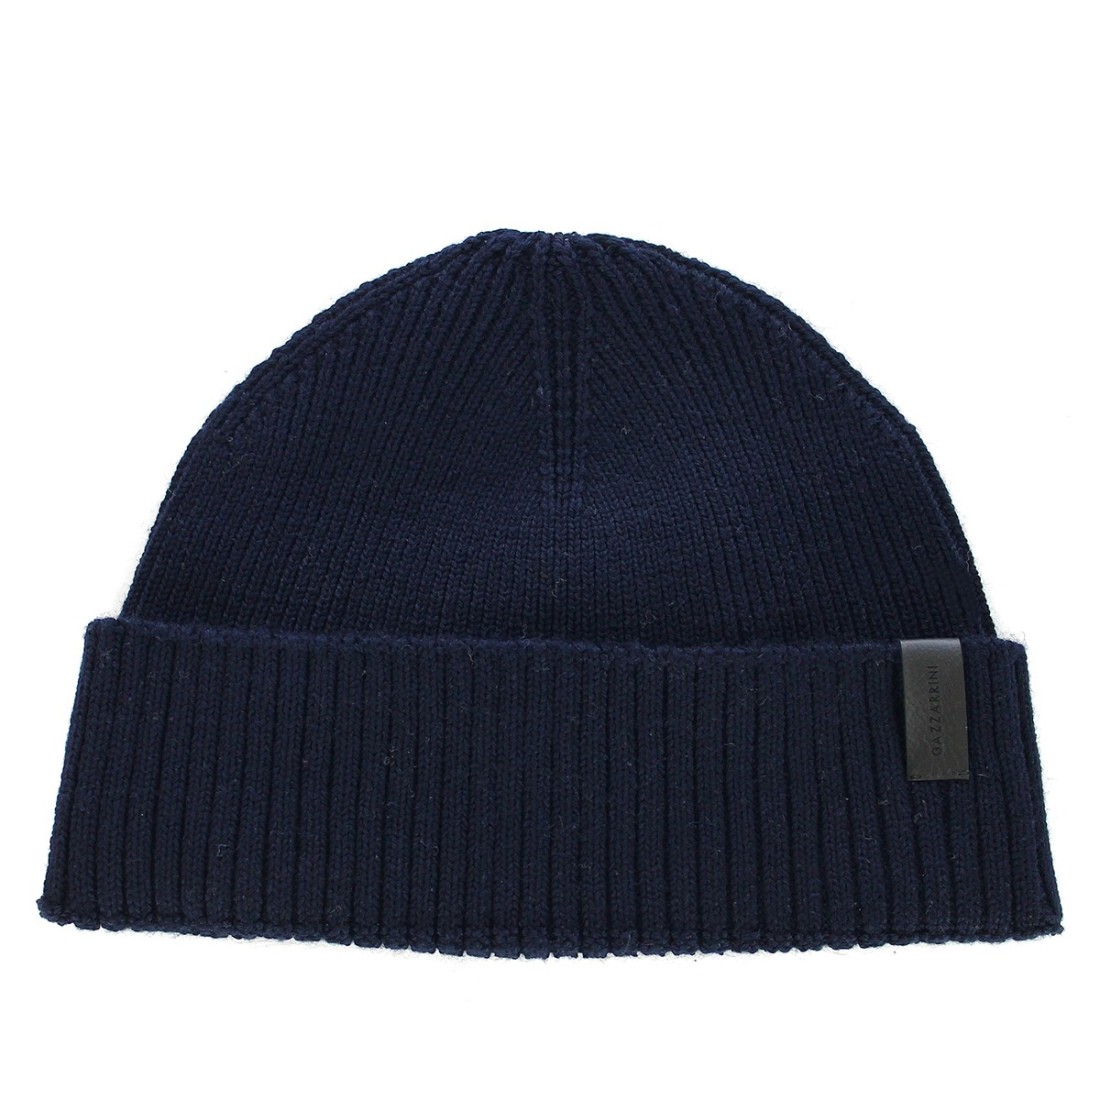 Image of GAZZARRINI - Cappello con patch logo - Colore: Blu